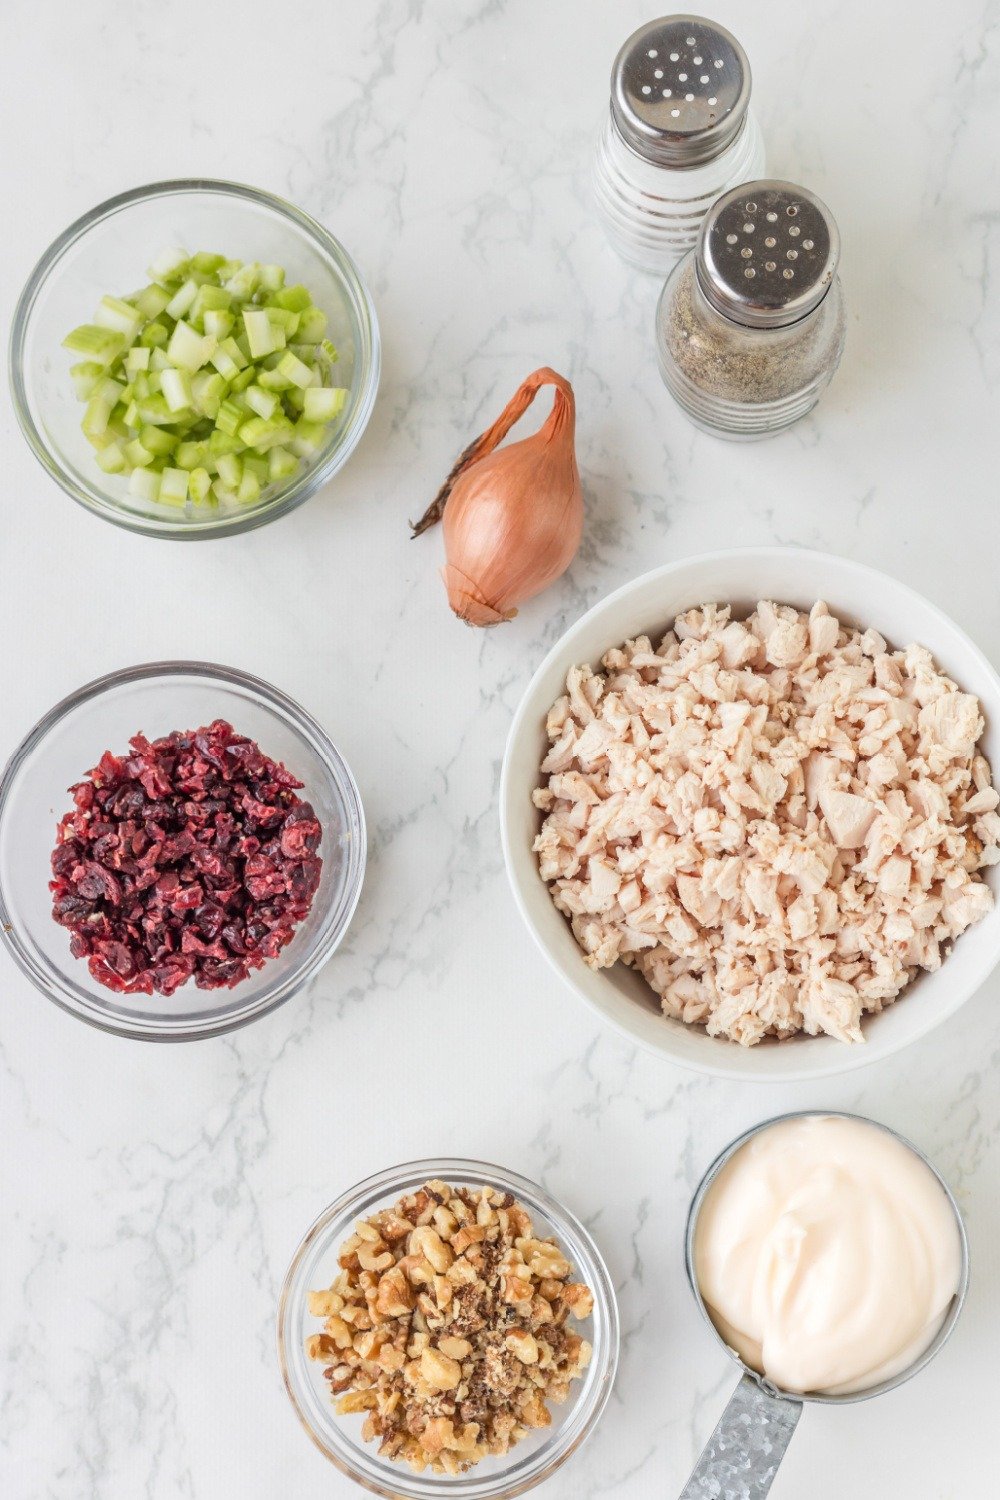 Cranberry Pecan Chicken Salad Recipe Ingredients